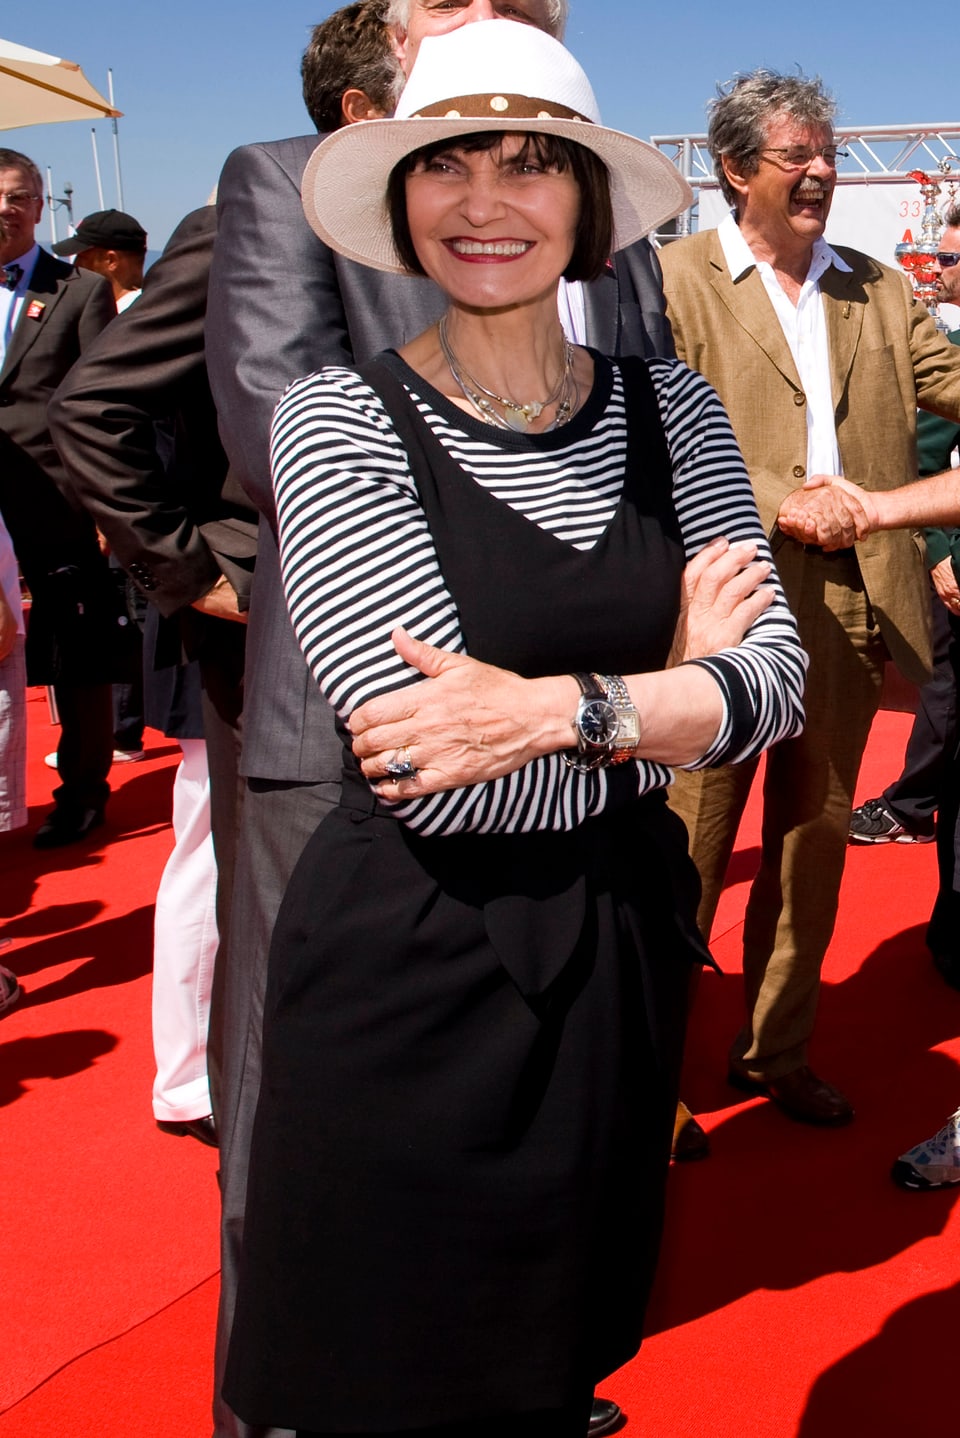 Micheline Calmy-Rey mit Hut, schwarzem Kleid und weiss schwarz gestreiftem Langarm-Shirt unter dem Kleid